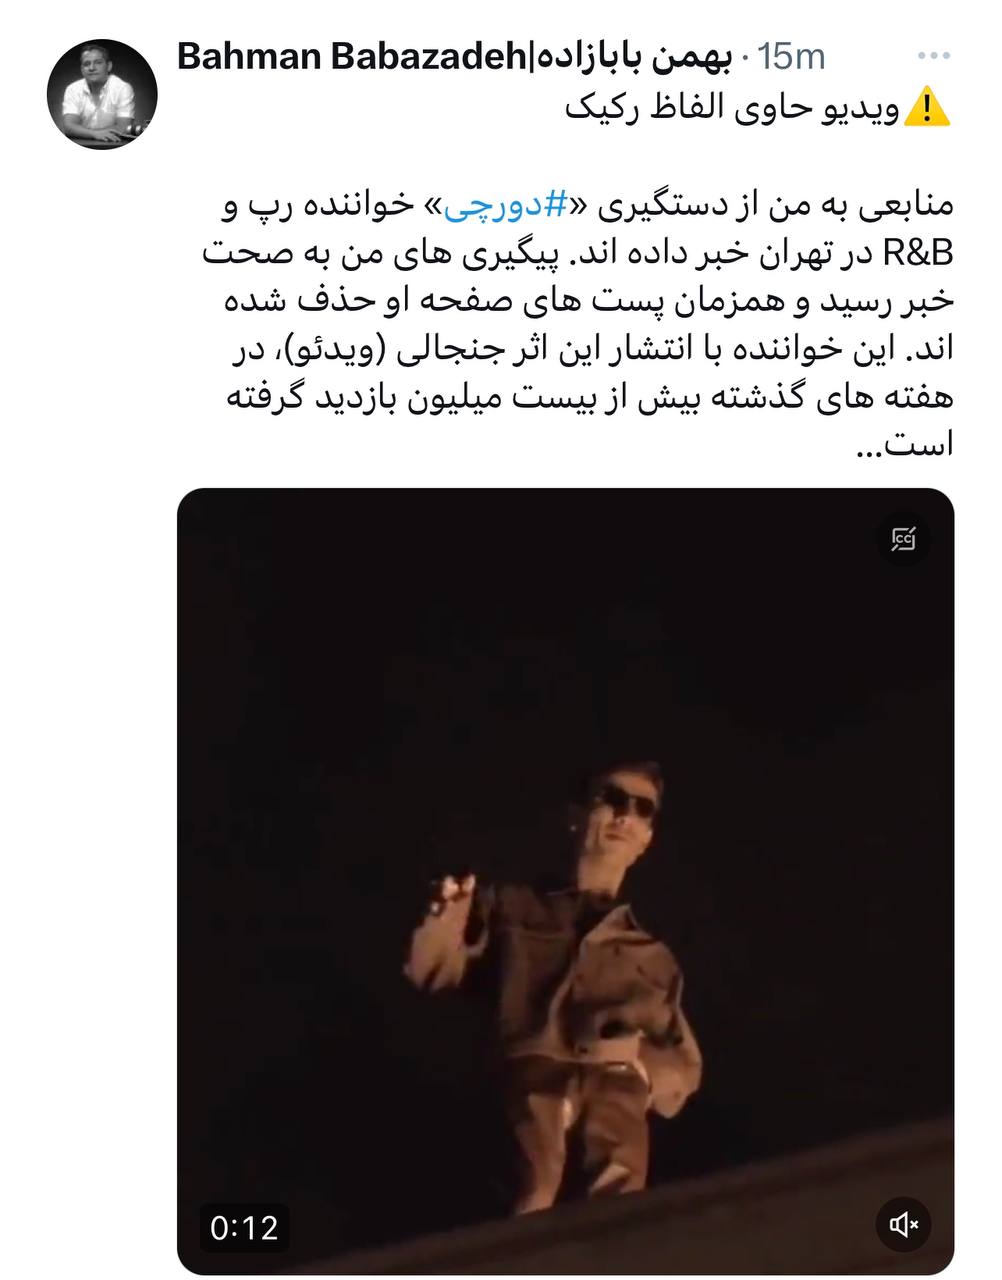 دورچي بازداشت شد